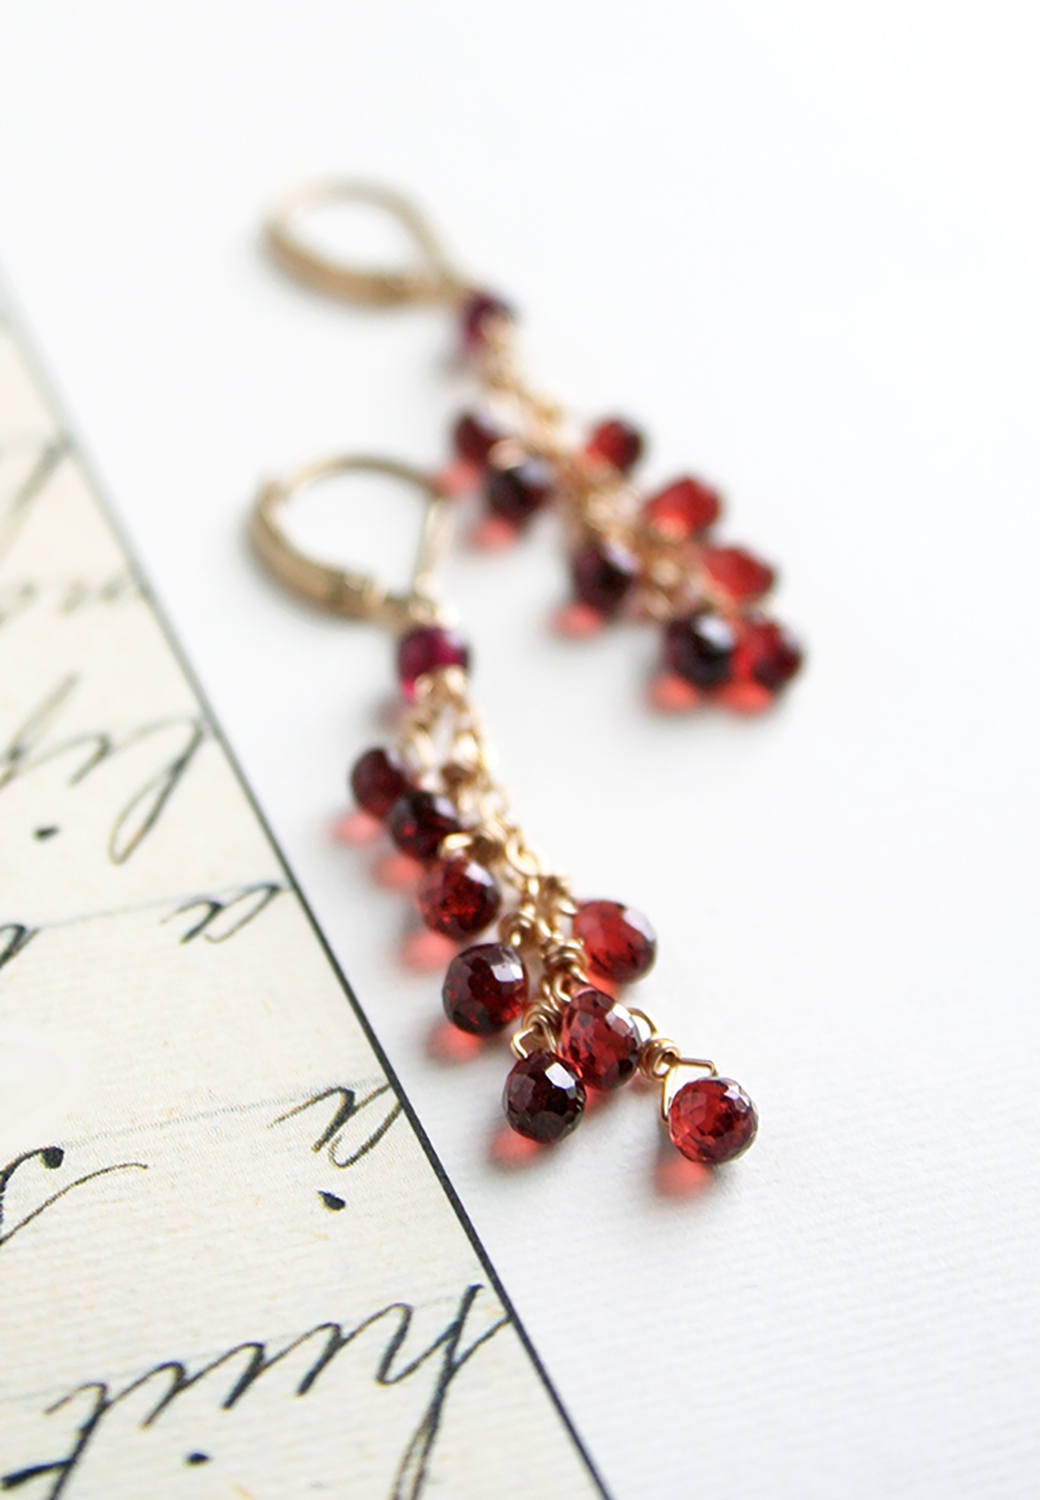 garnet jewelry etsy seller laura stark via http://etsy.me/2mKmIP1